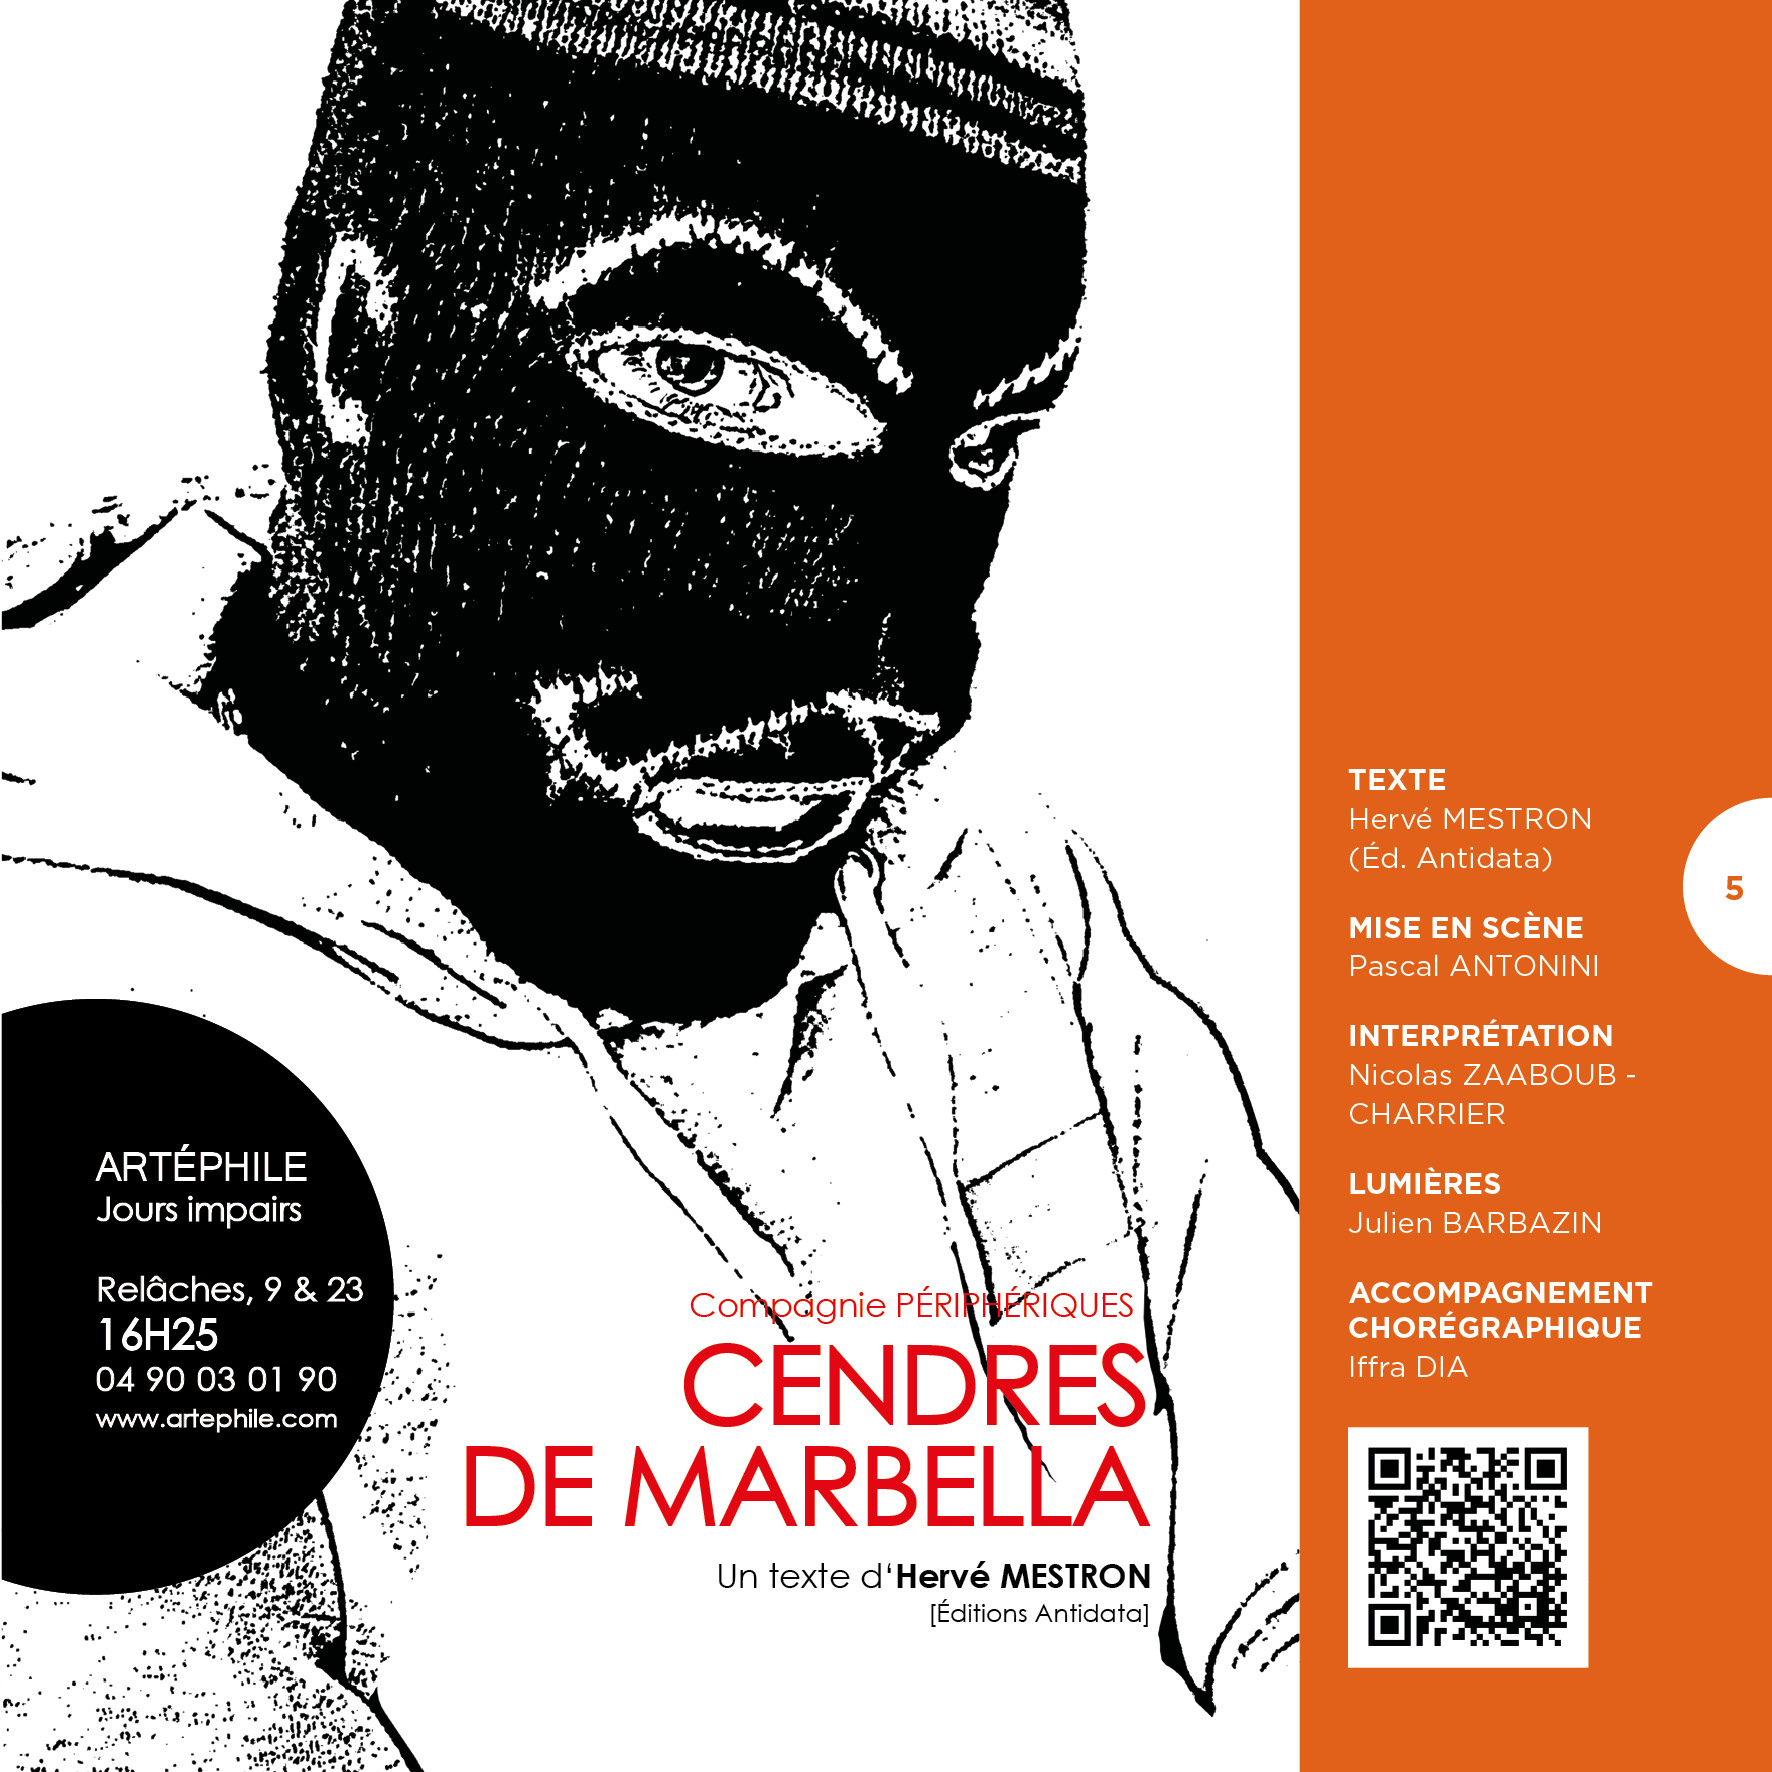 CENDRES DE MARBELLA  Diptyque 1/2 Artéphile  Avignon 21 //  Diffusion